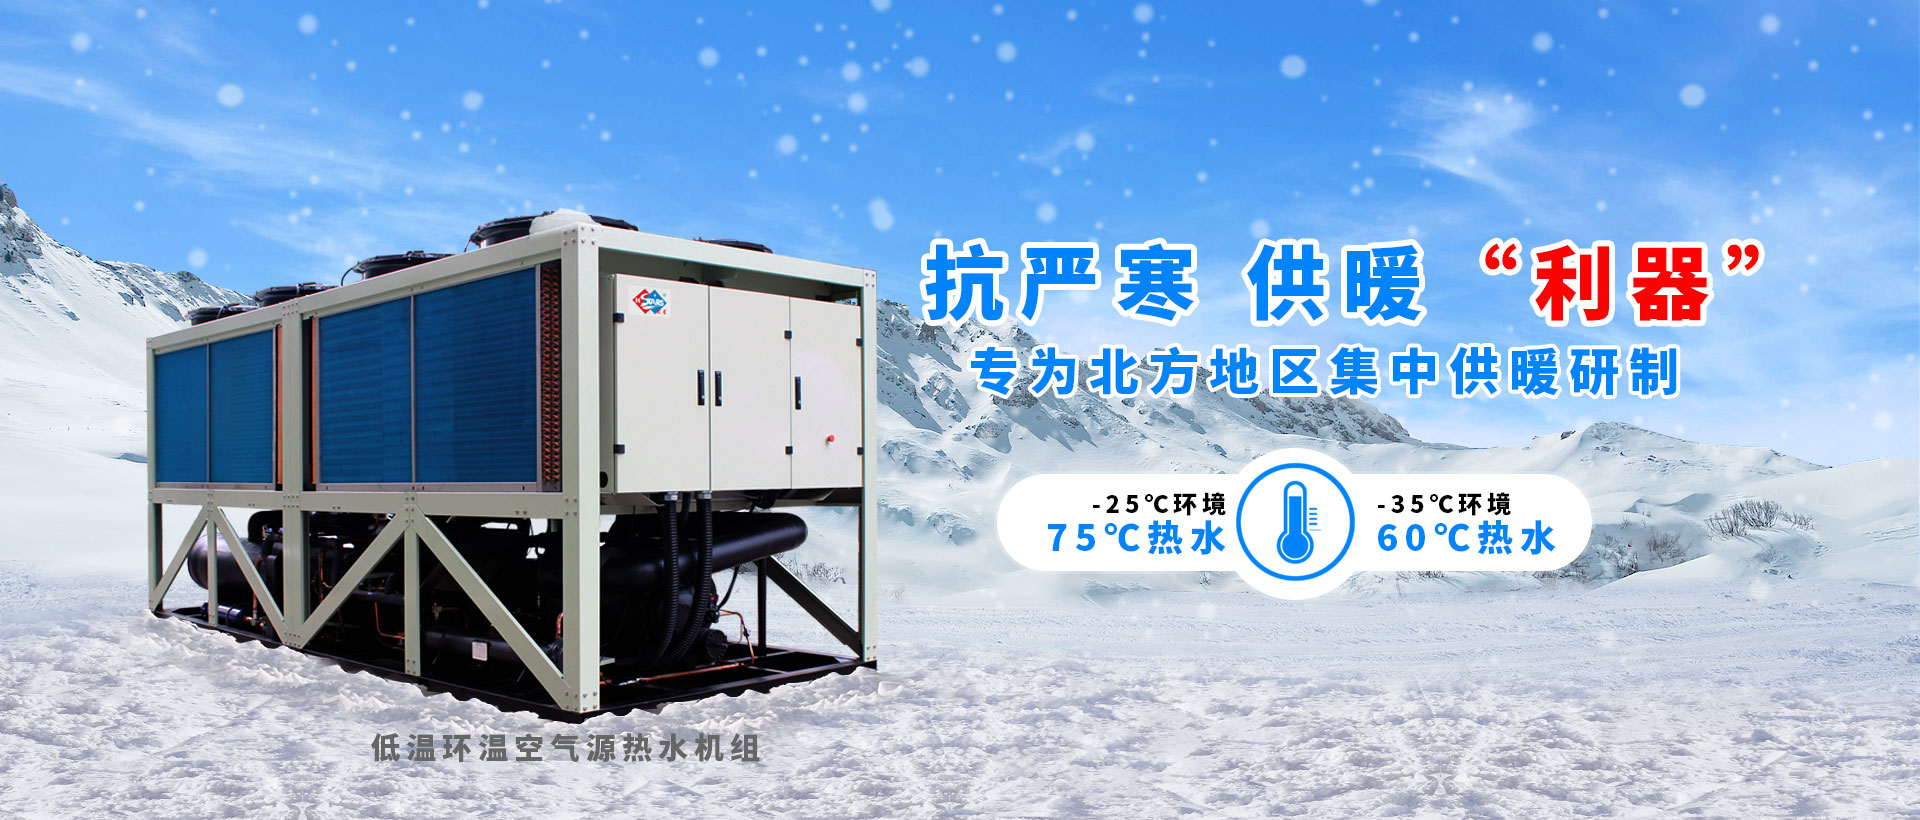 恒星低温环空气热泵专为北方低温环境定制